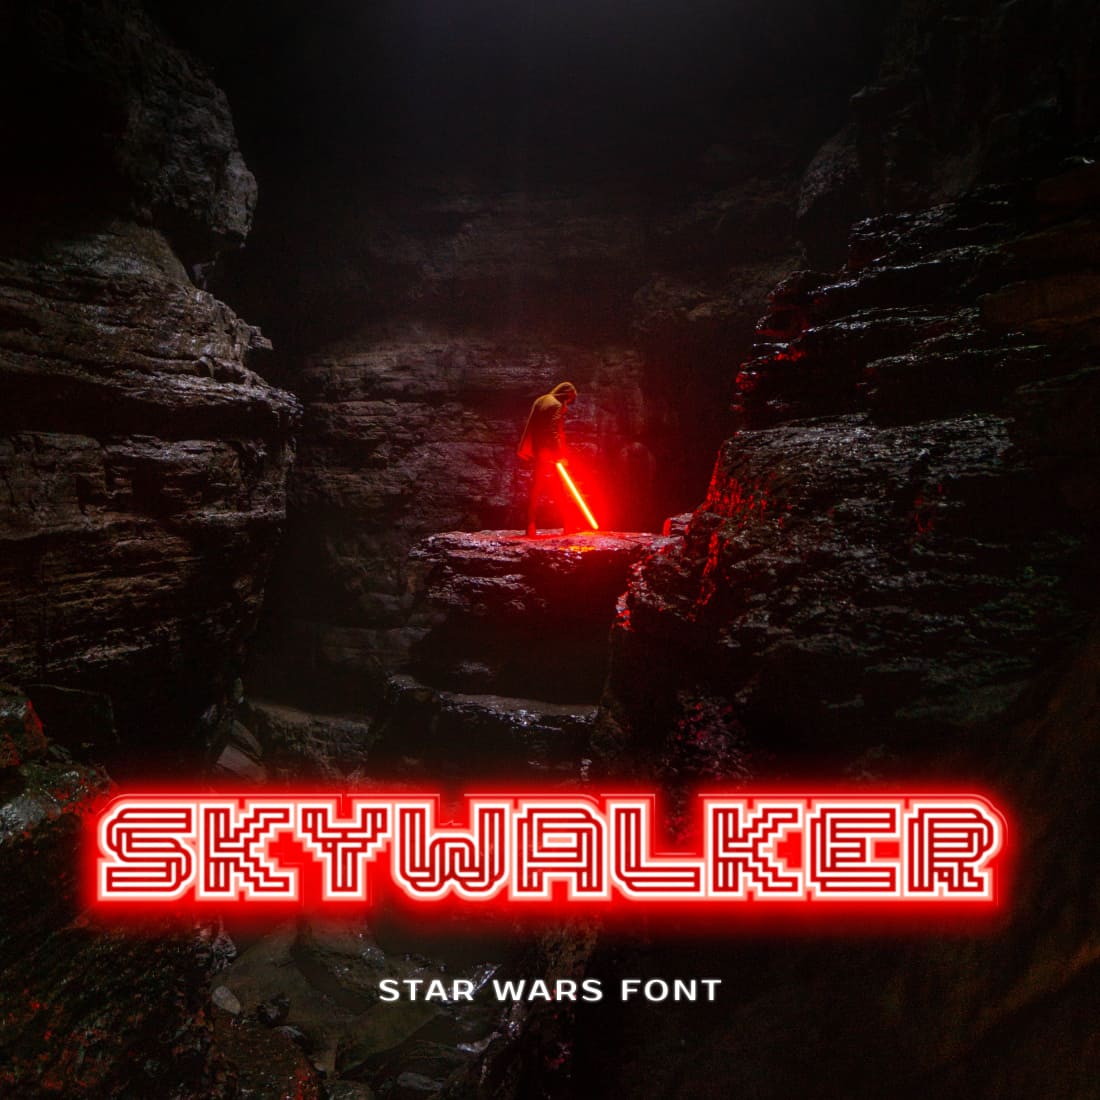 Skywalker star wars font main cover by MasterBundles.